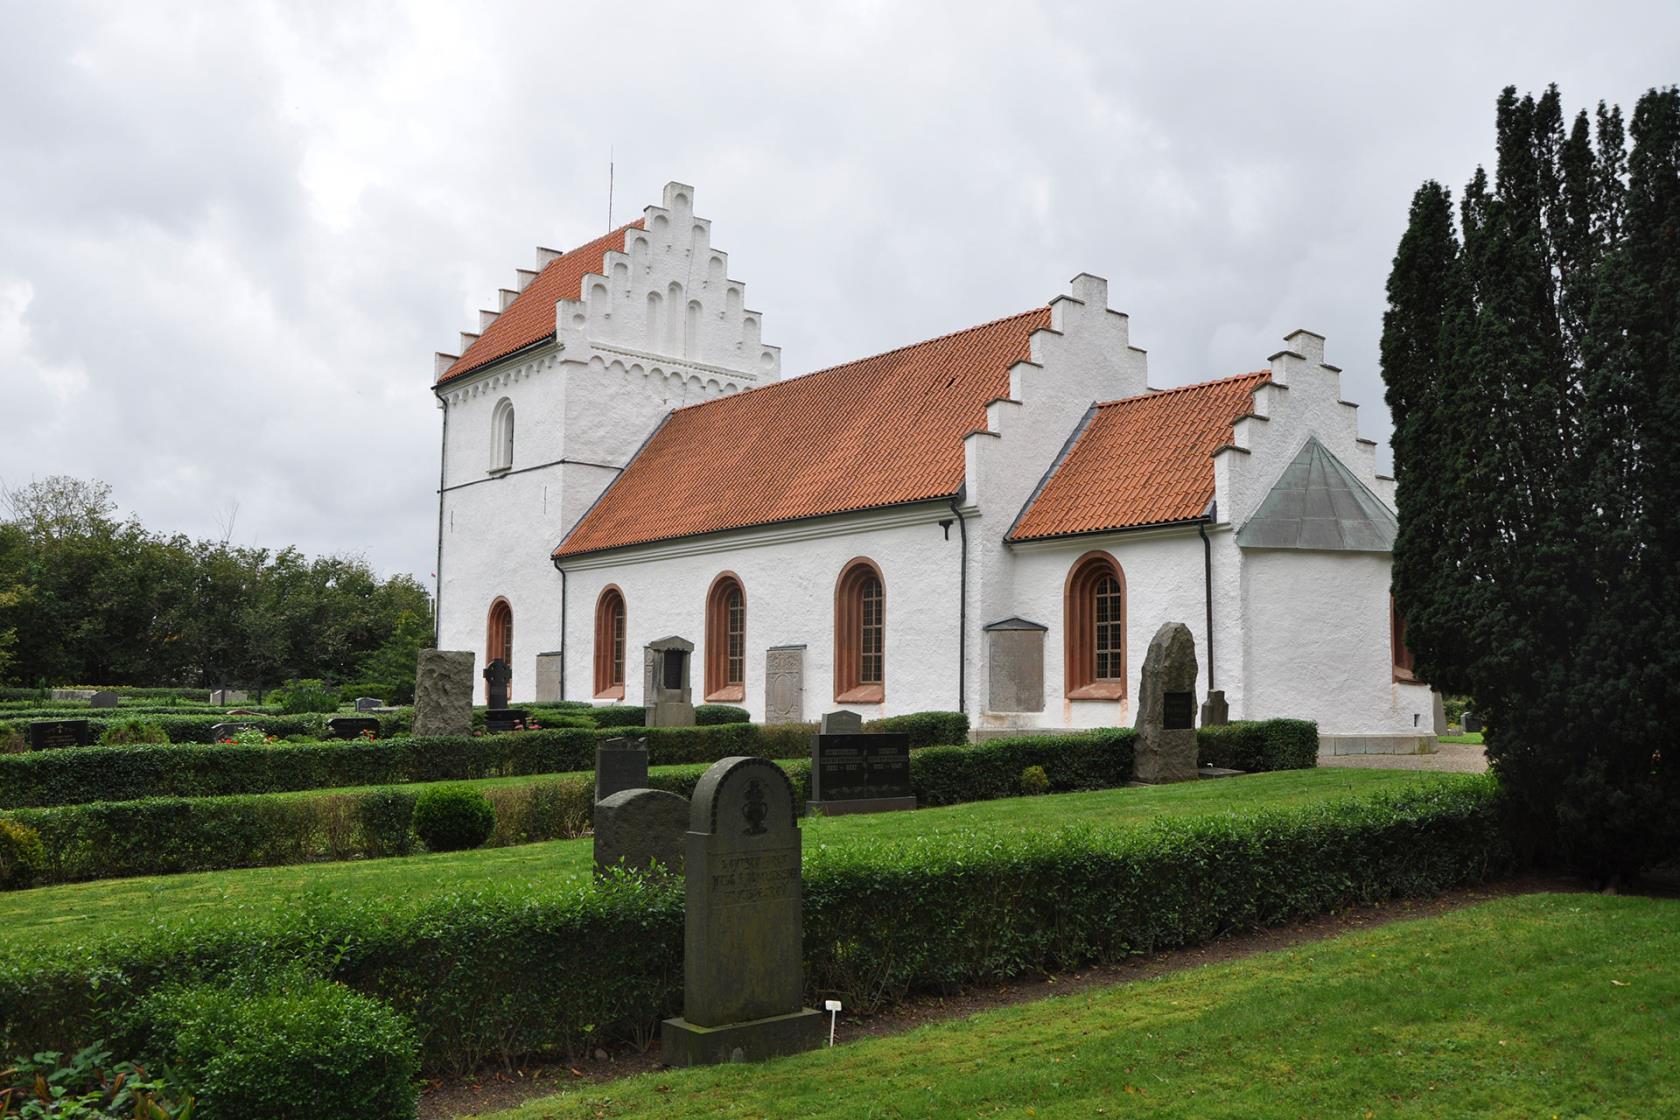 Högestad kyrka är en vitputsad kalkstenskyrka som ligger på en höjd utanför Ystad.